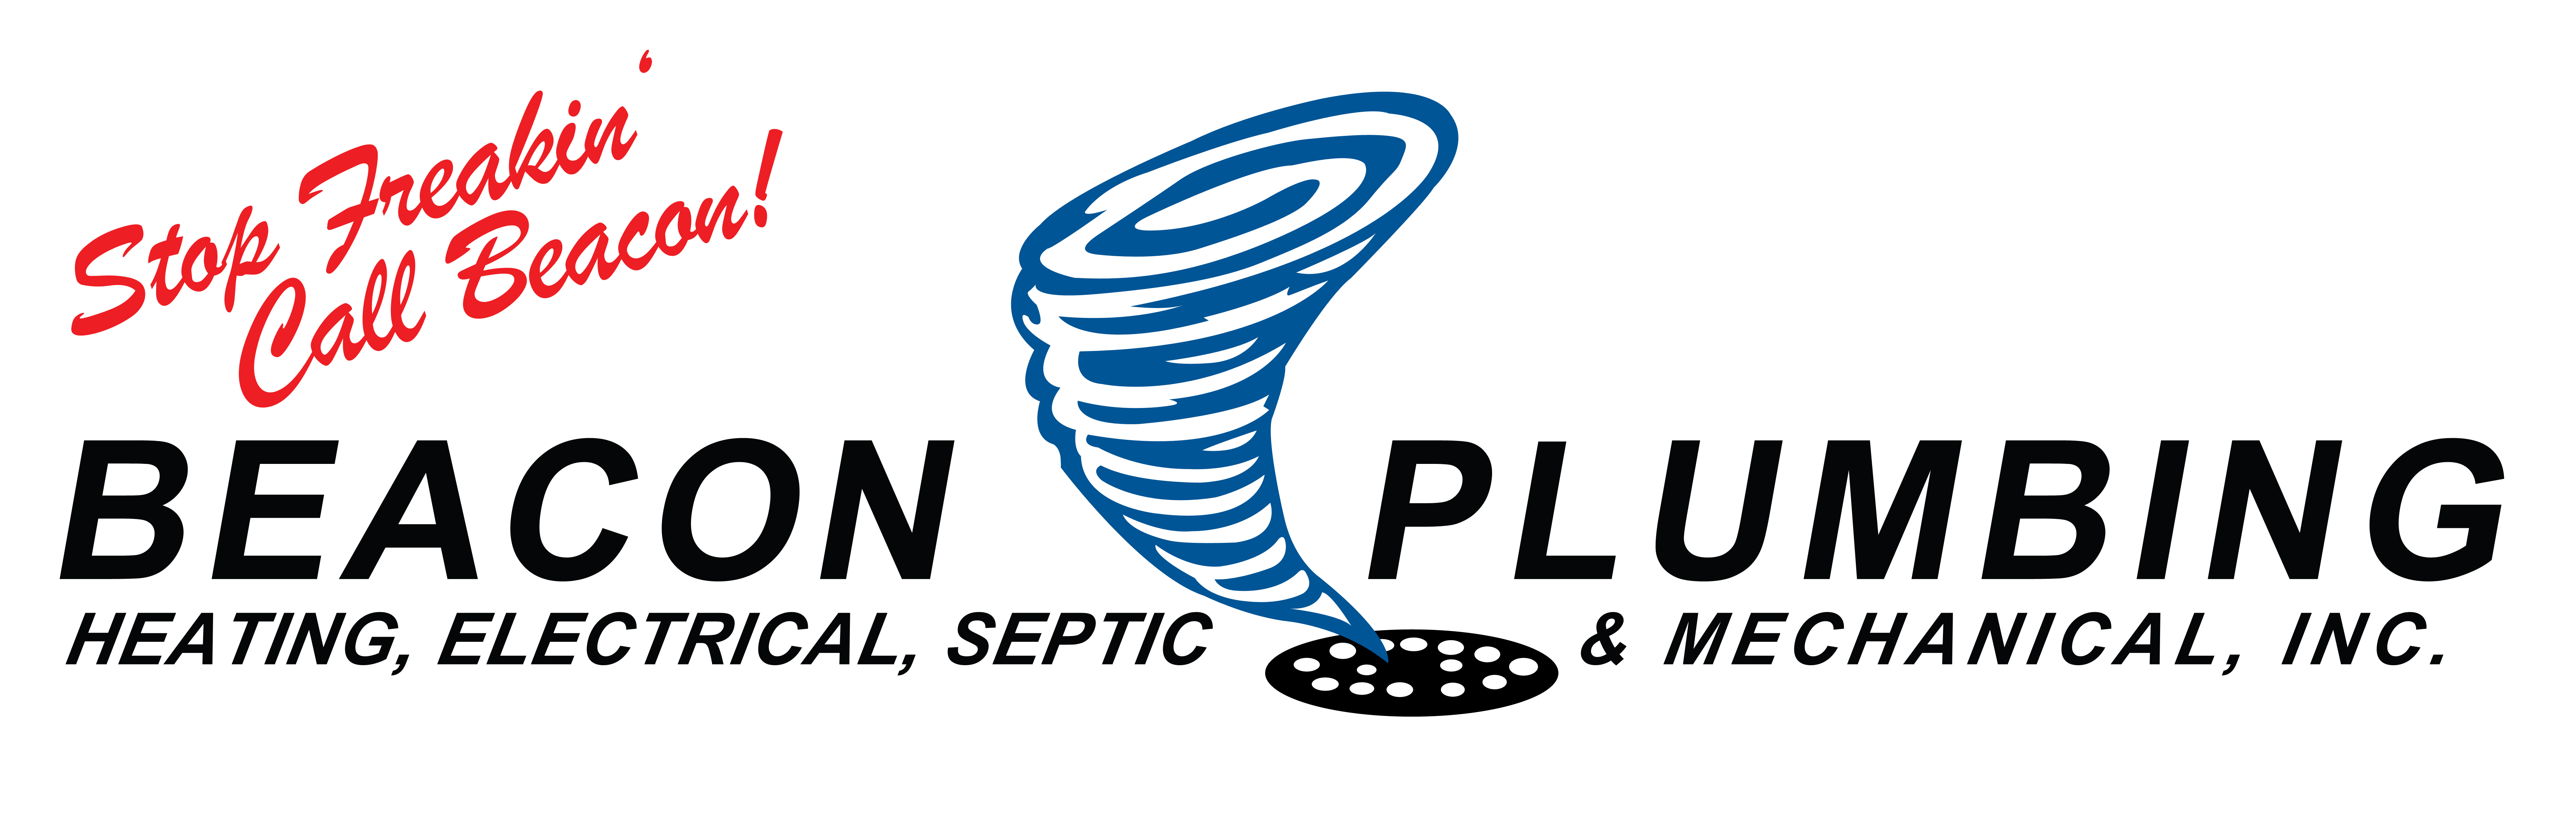 Beacon Plumbing & Mechanical, Inc. Logo